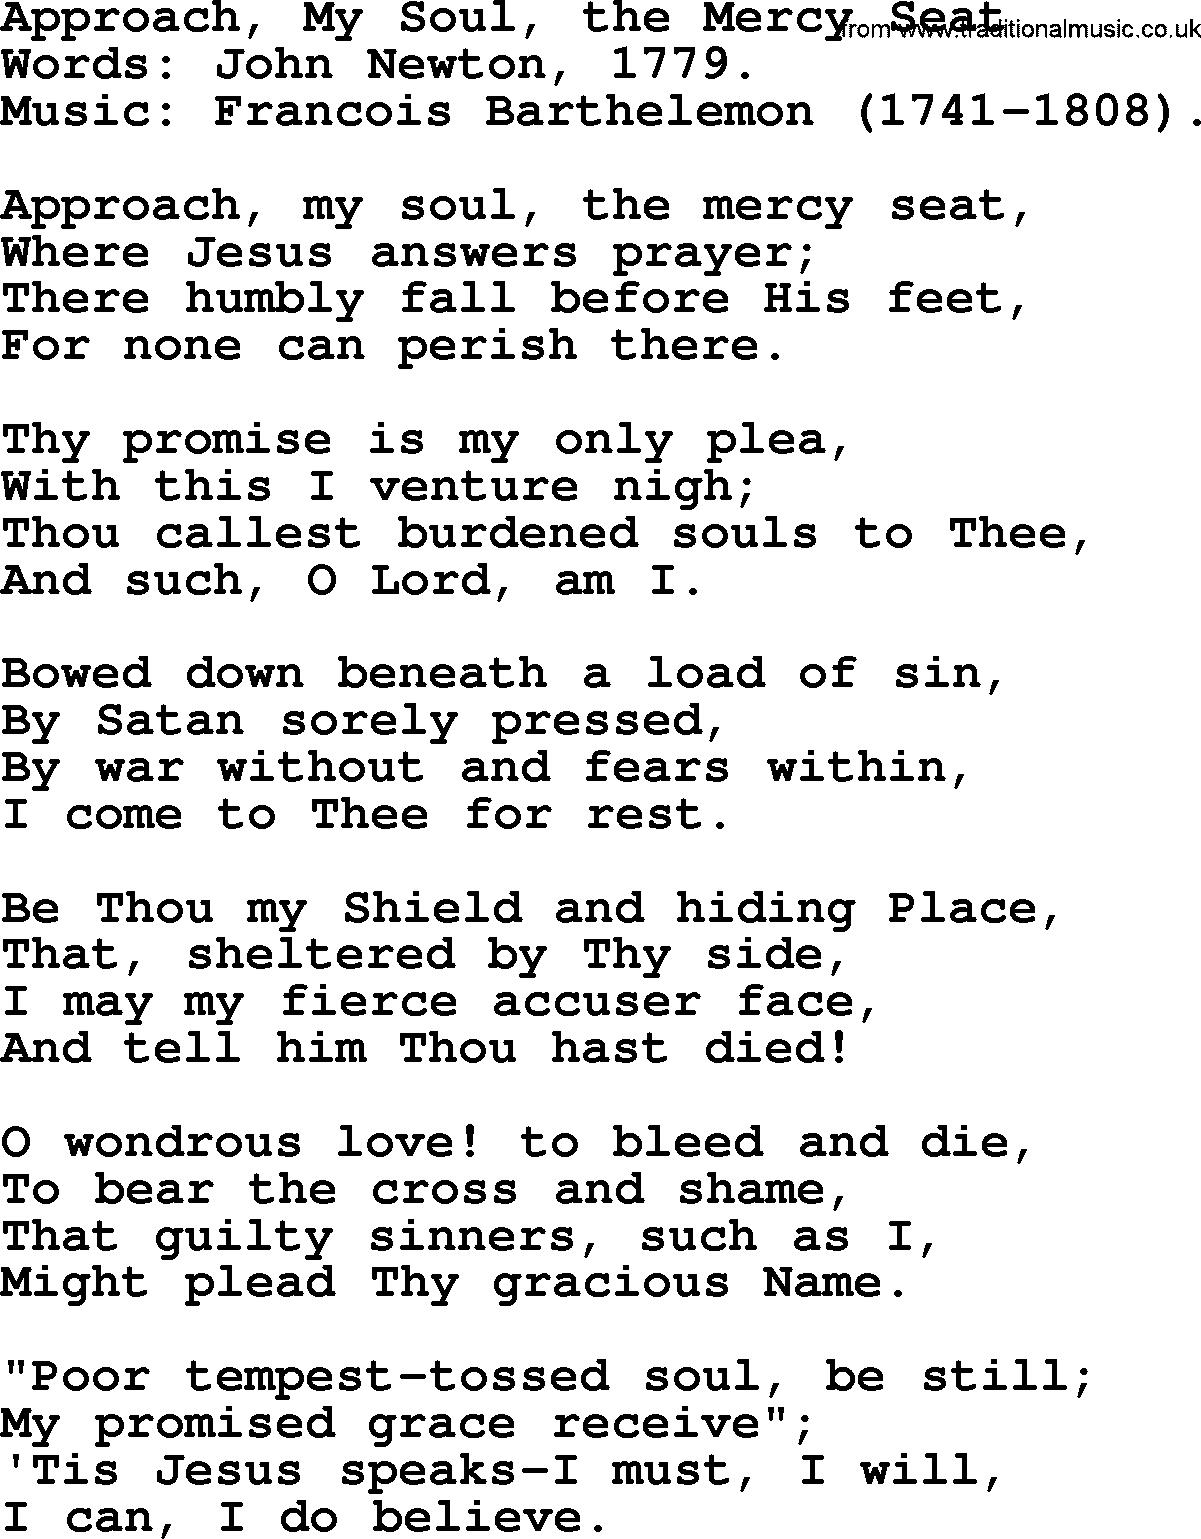 John Newton hymn: Approach, My Soul, The Mercy Seat, lyrics